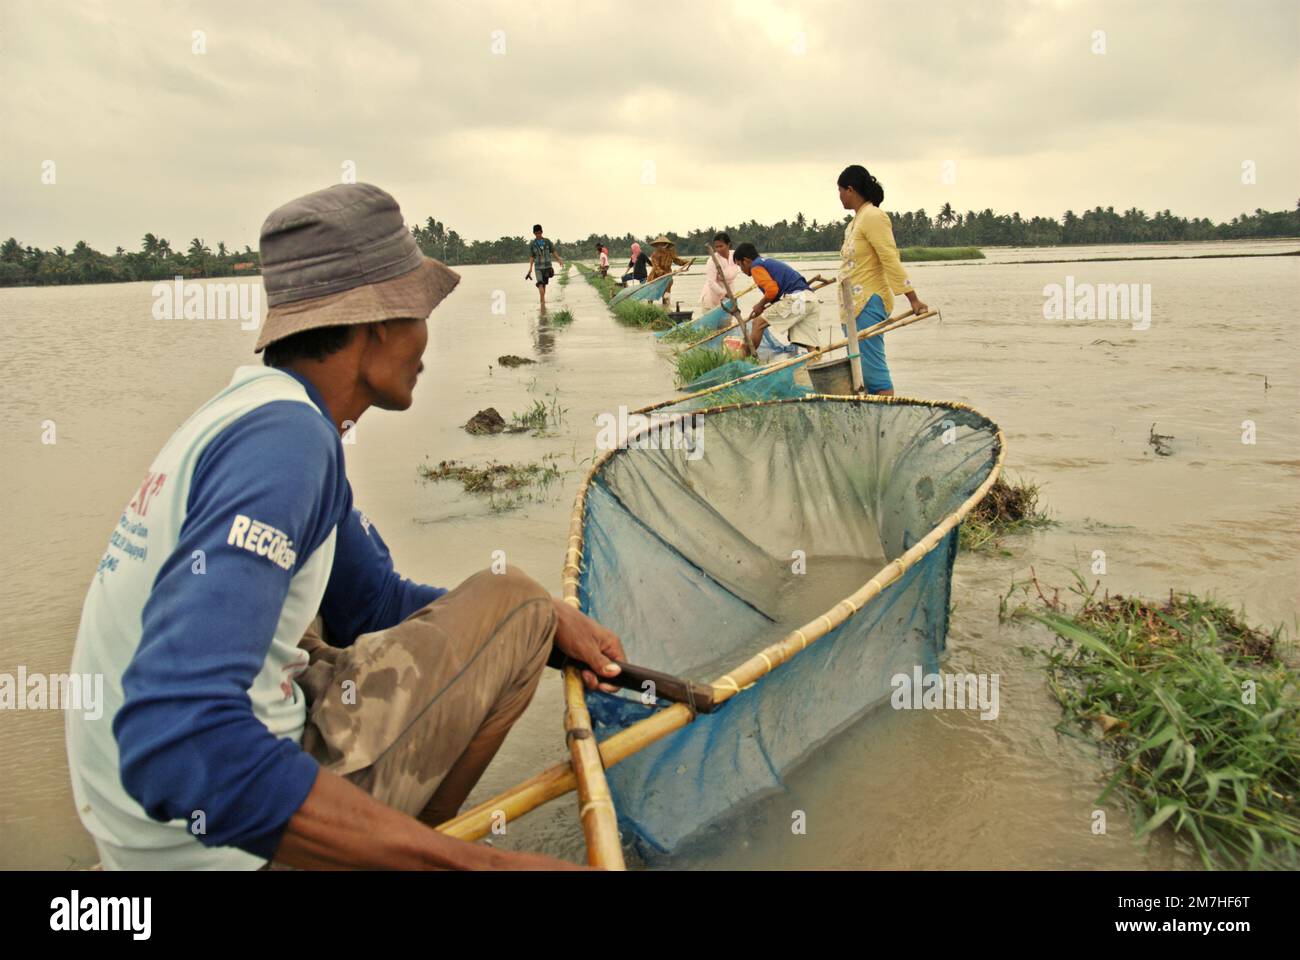 Les personnes pêchant sur un champ de riz inondé avec des pushnets pendant la saison des pluies qui ont causé des inondations à Karawang regency, province de Java Ouest, Indonésie. Banque D'Images